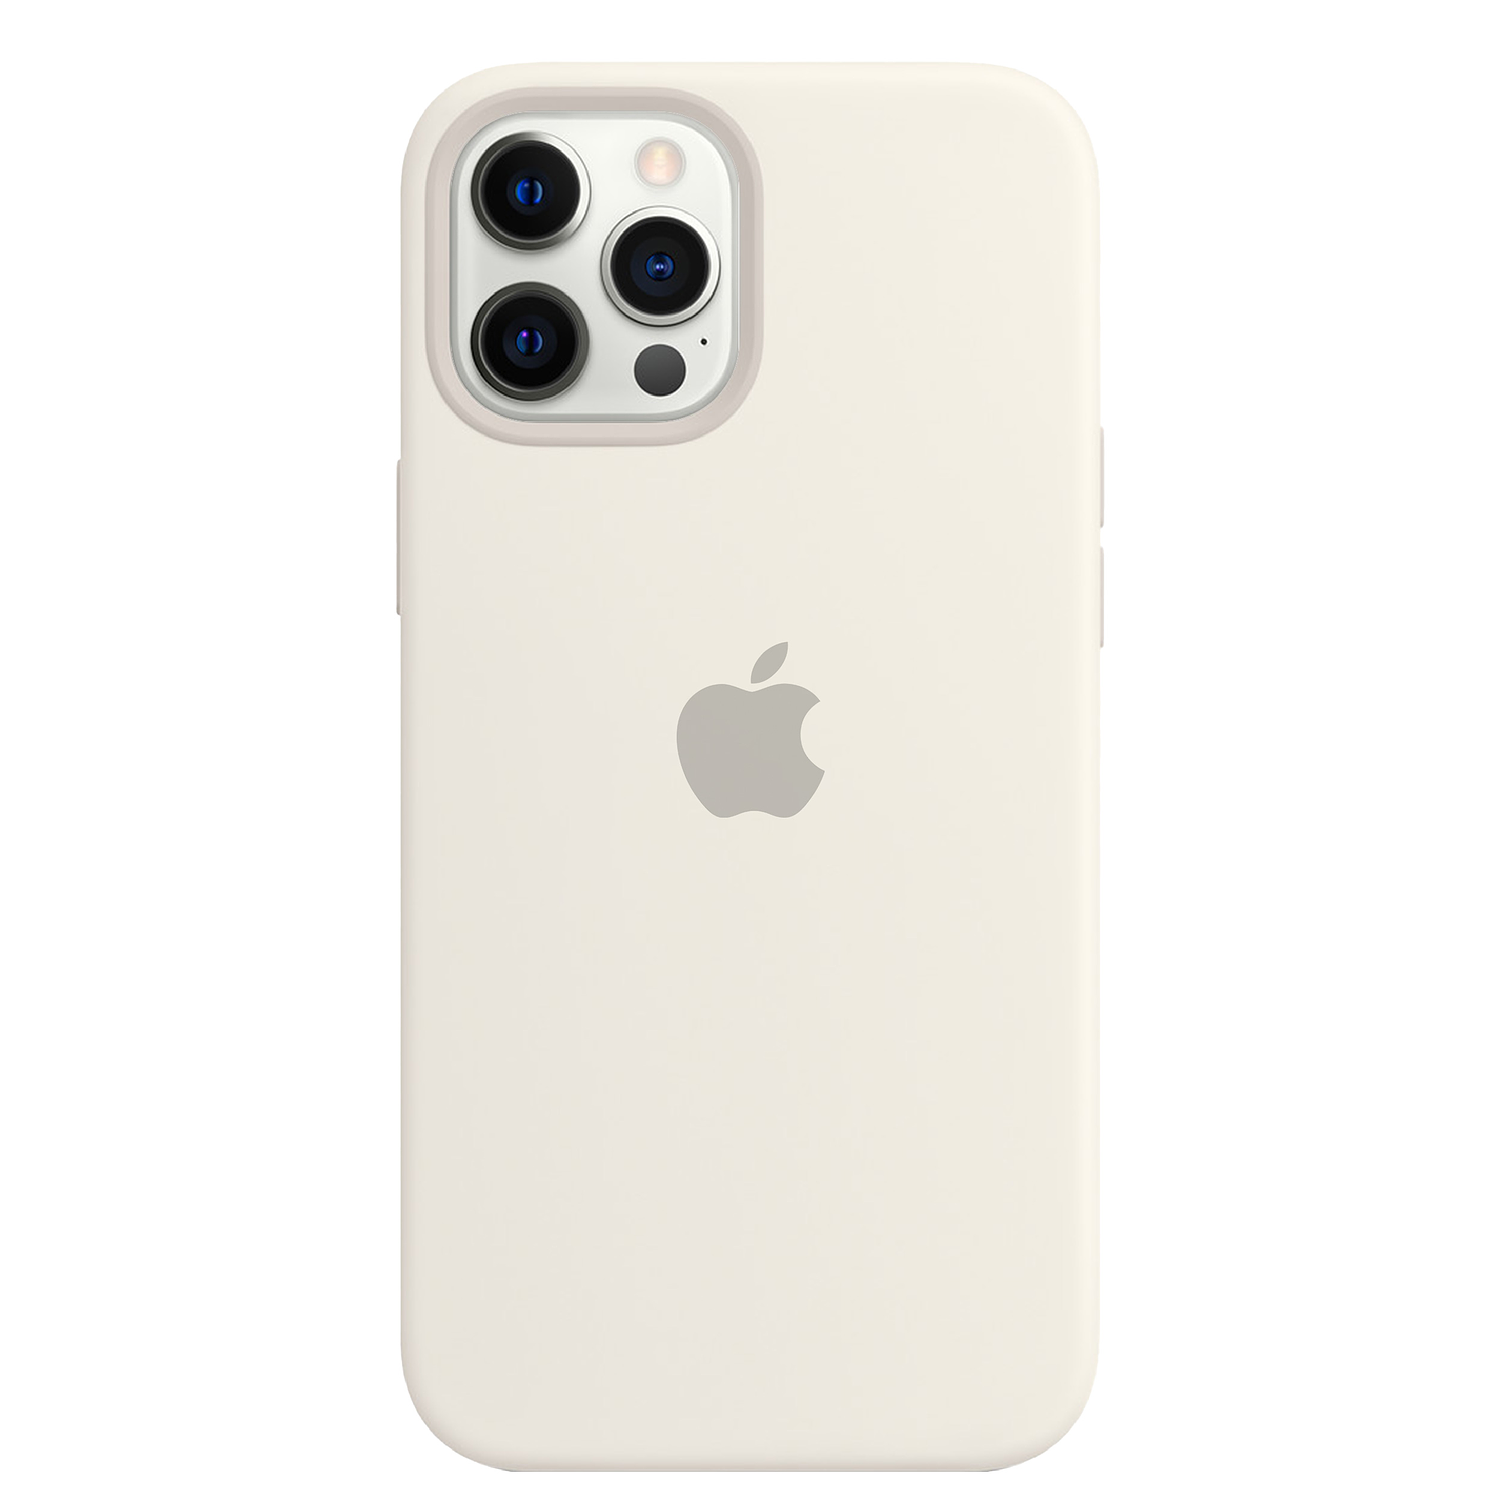 Carcasa de Silicona - iPhone 12 Pro Max 1